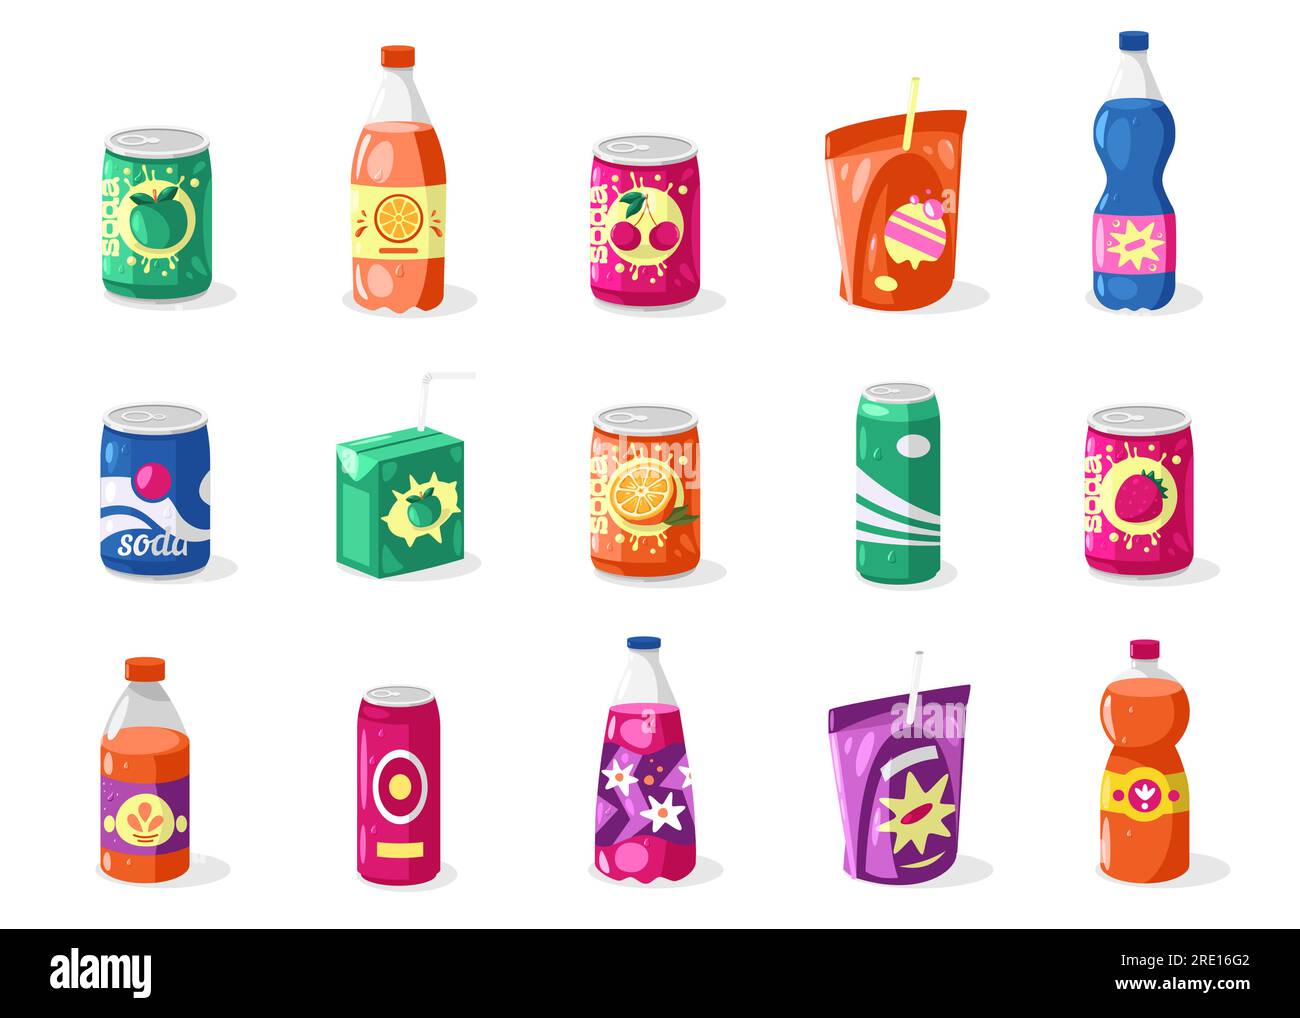 Getränke in Flaschen und Dosen. Cartoon Aluminium, Glas und Plastikdosen mit verschiedenen Getränken, Energy Drink, Alkohol, alkoholische Getränke Stock Vektor